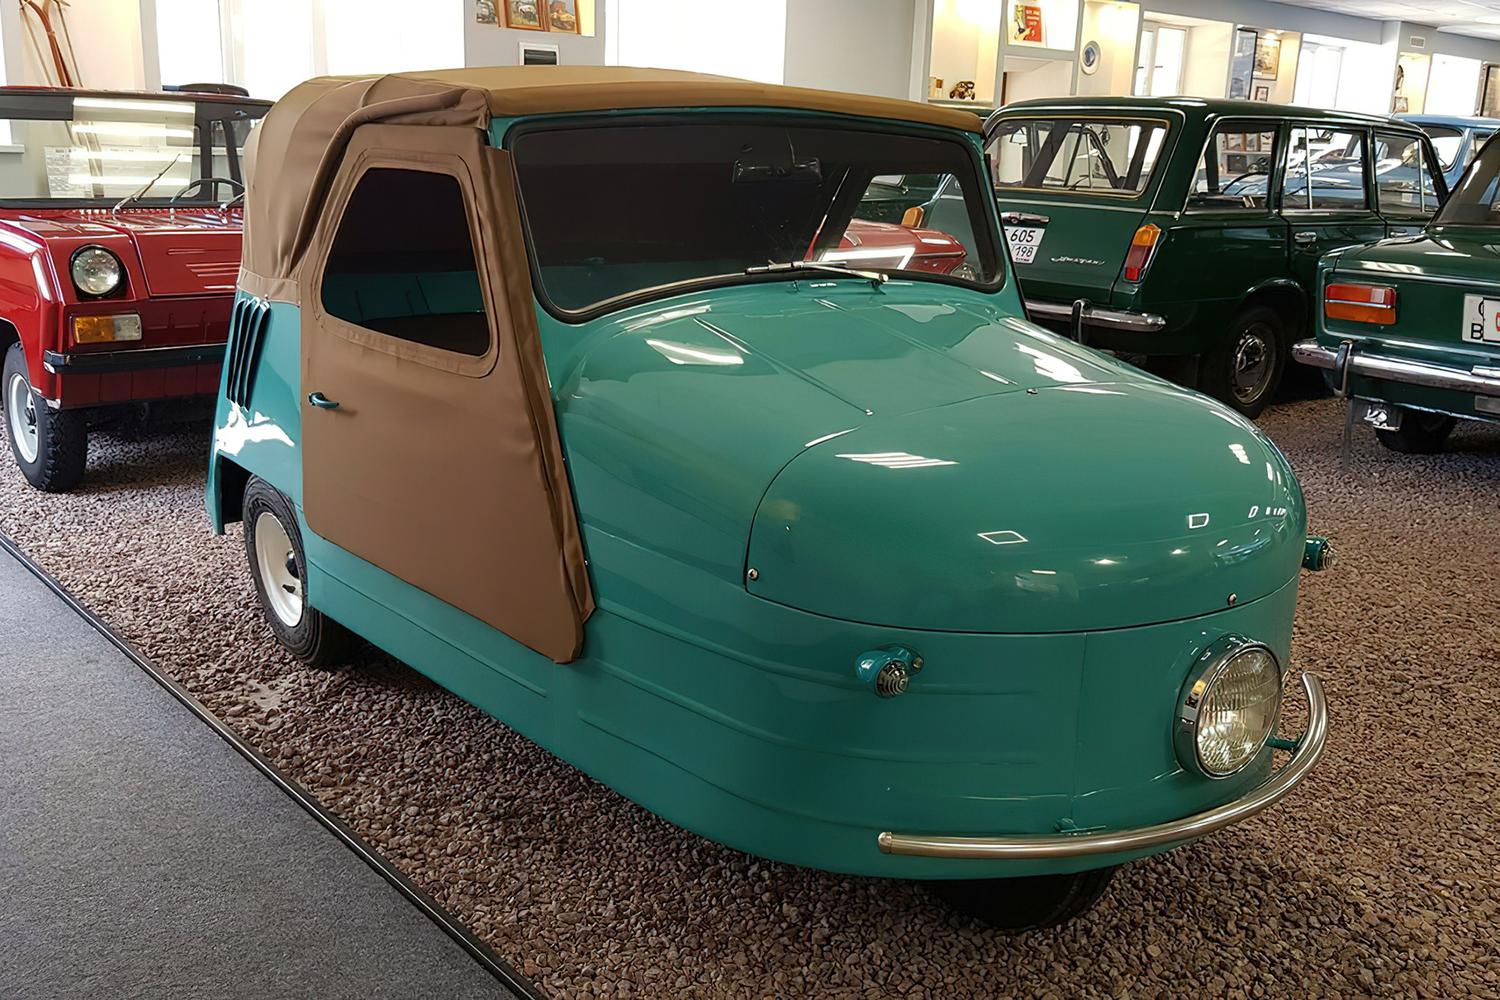    66-     Volkswagen Tiguan   Motor